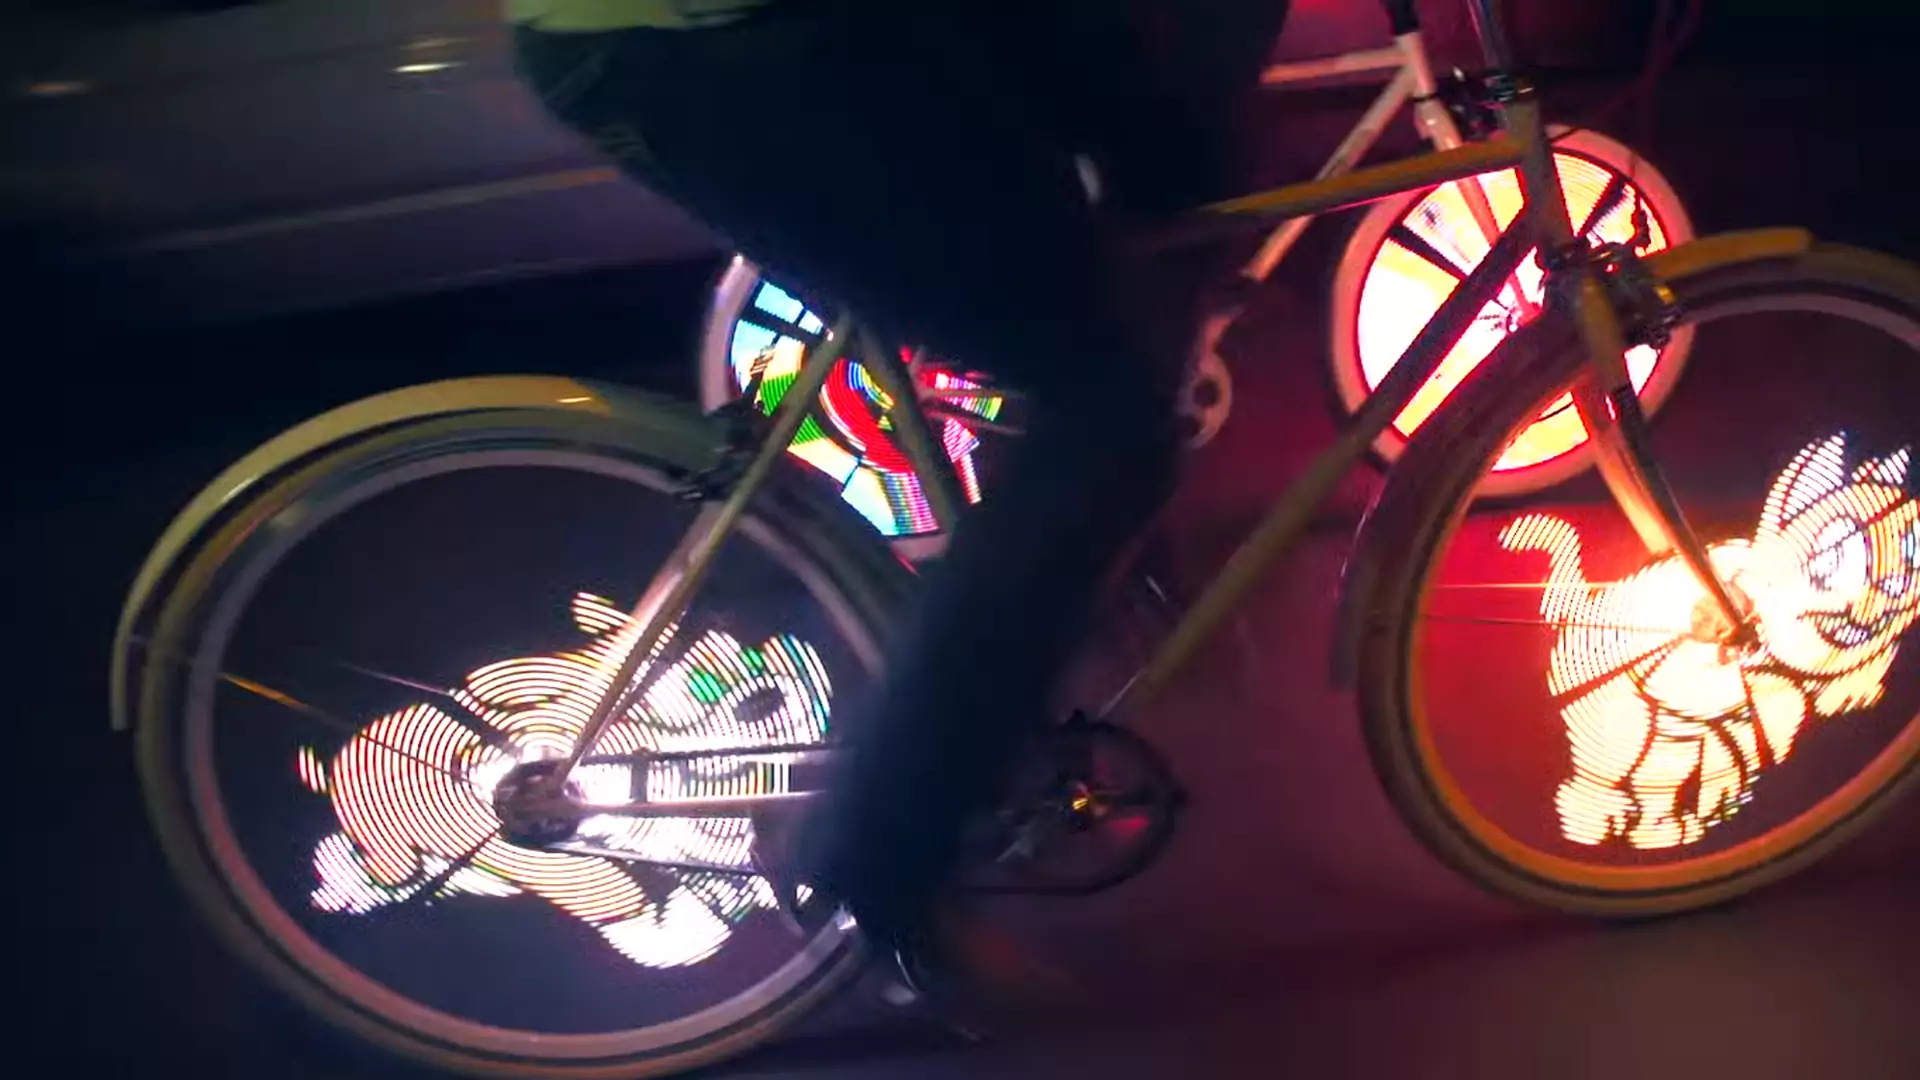 Podświetlone koła roweru to gadżet, który dba o twoje bezpieczeństwo na drodze i modny look